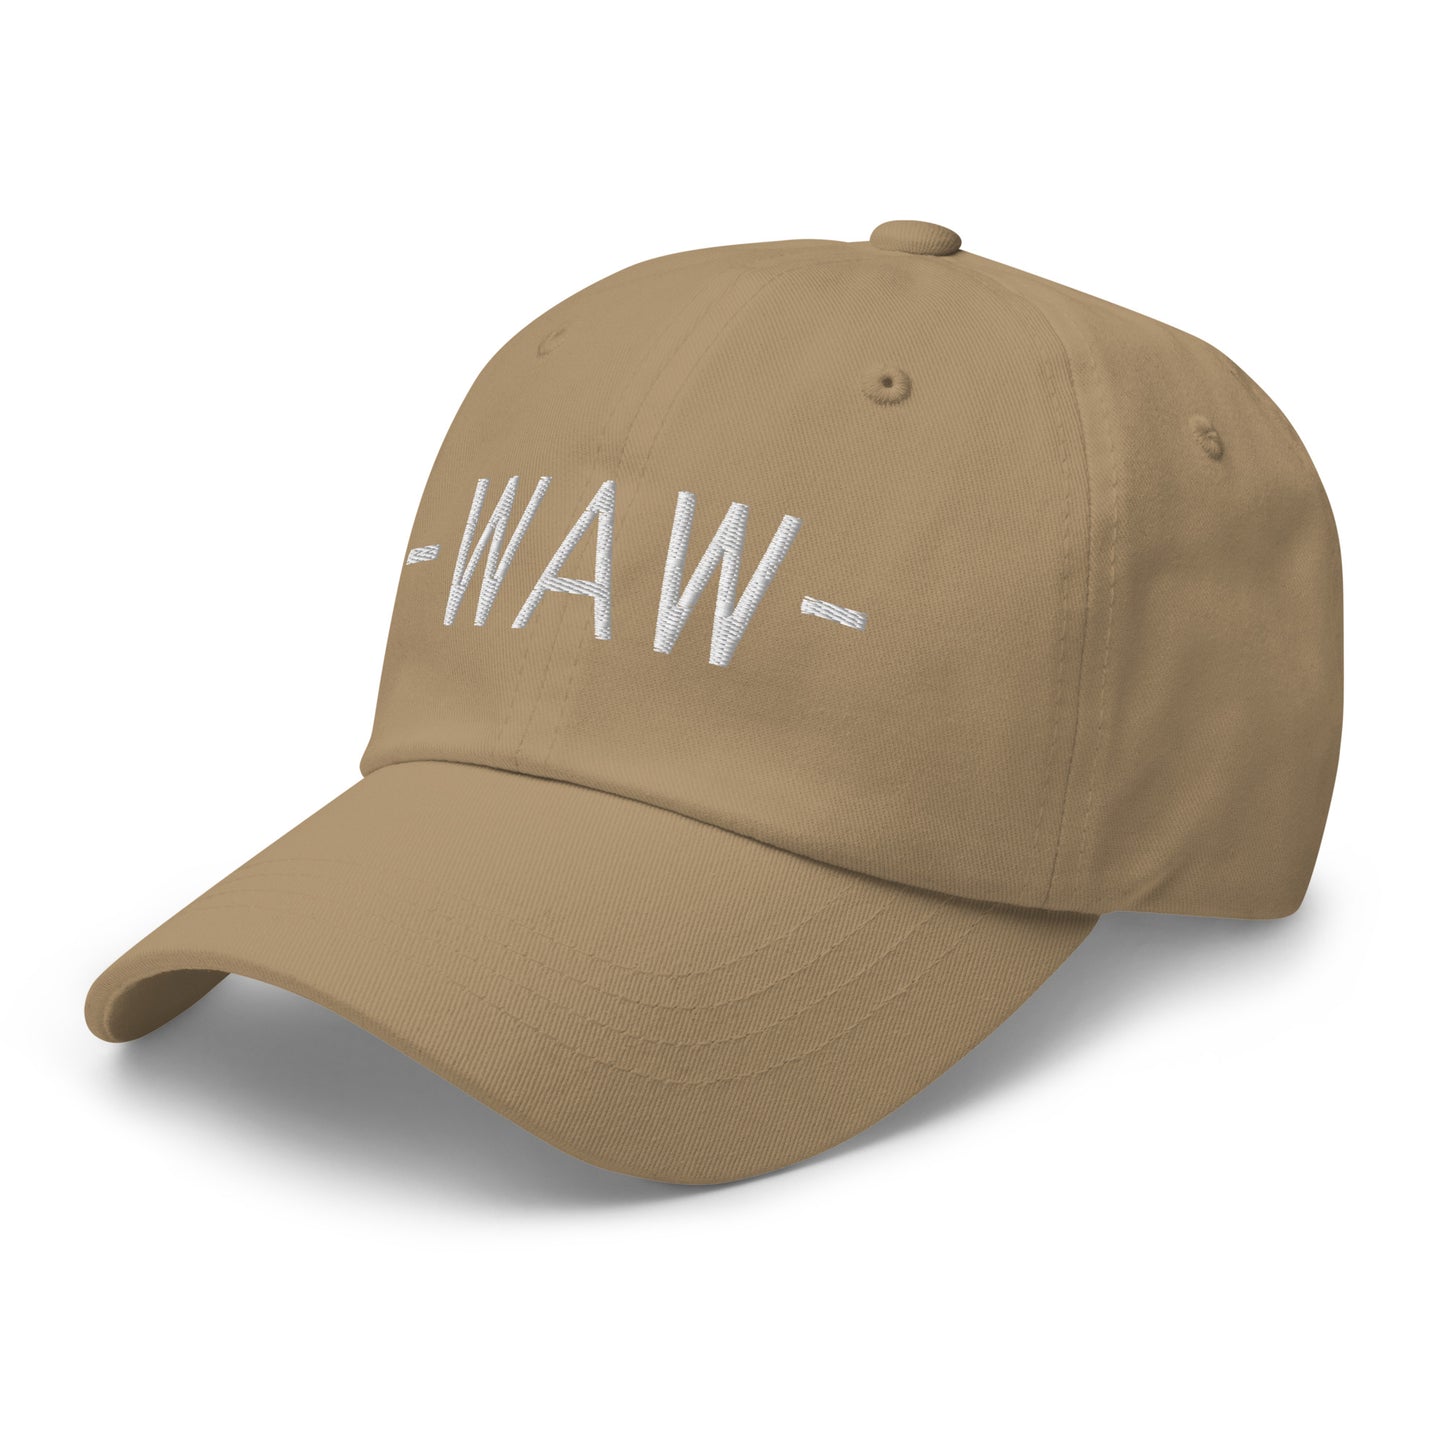 Souvenir Baseball Cap - White • WAW Warsaw • YHM Designs - Image 22